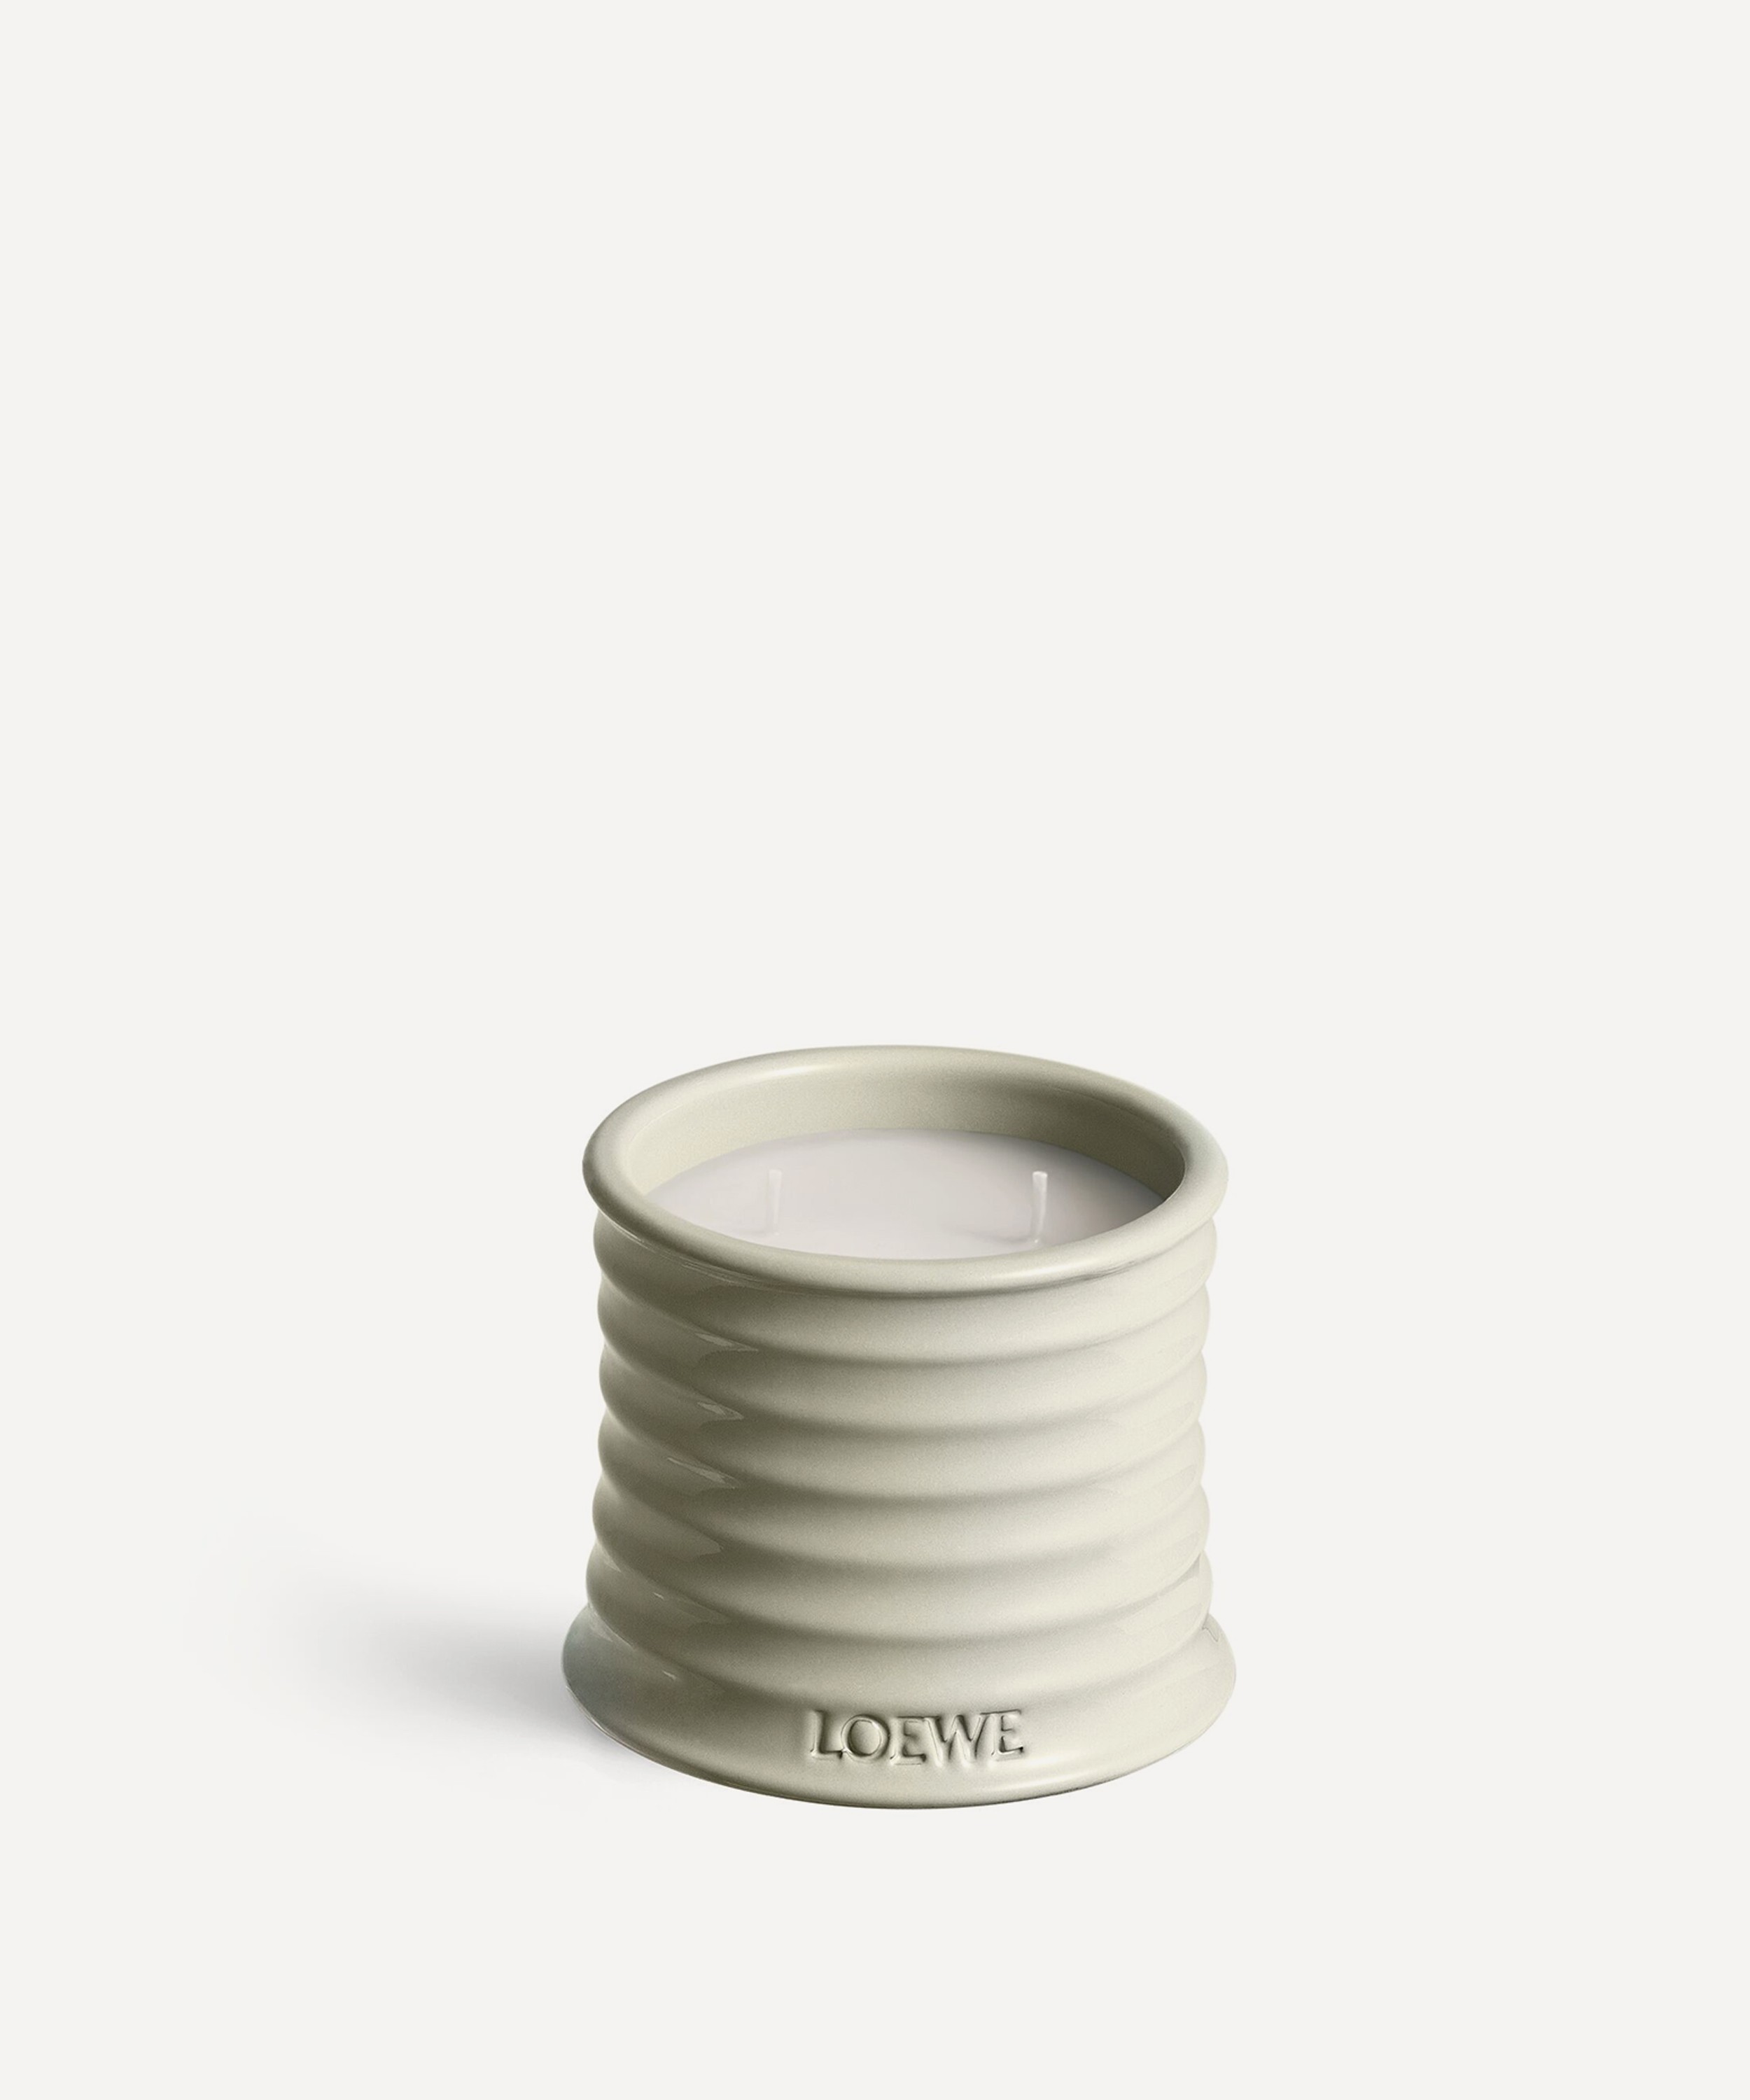 Loewe - Small Mushroom Candle 170g image number 0